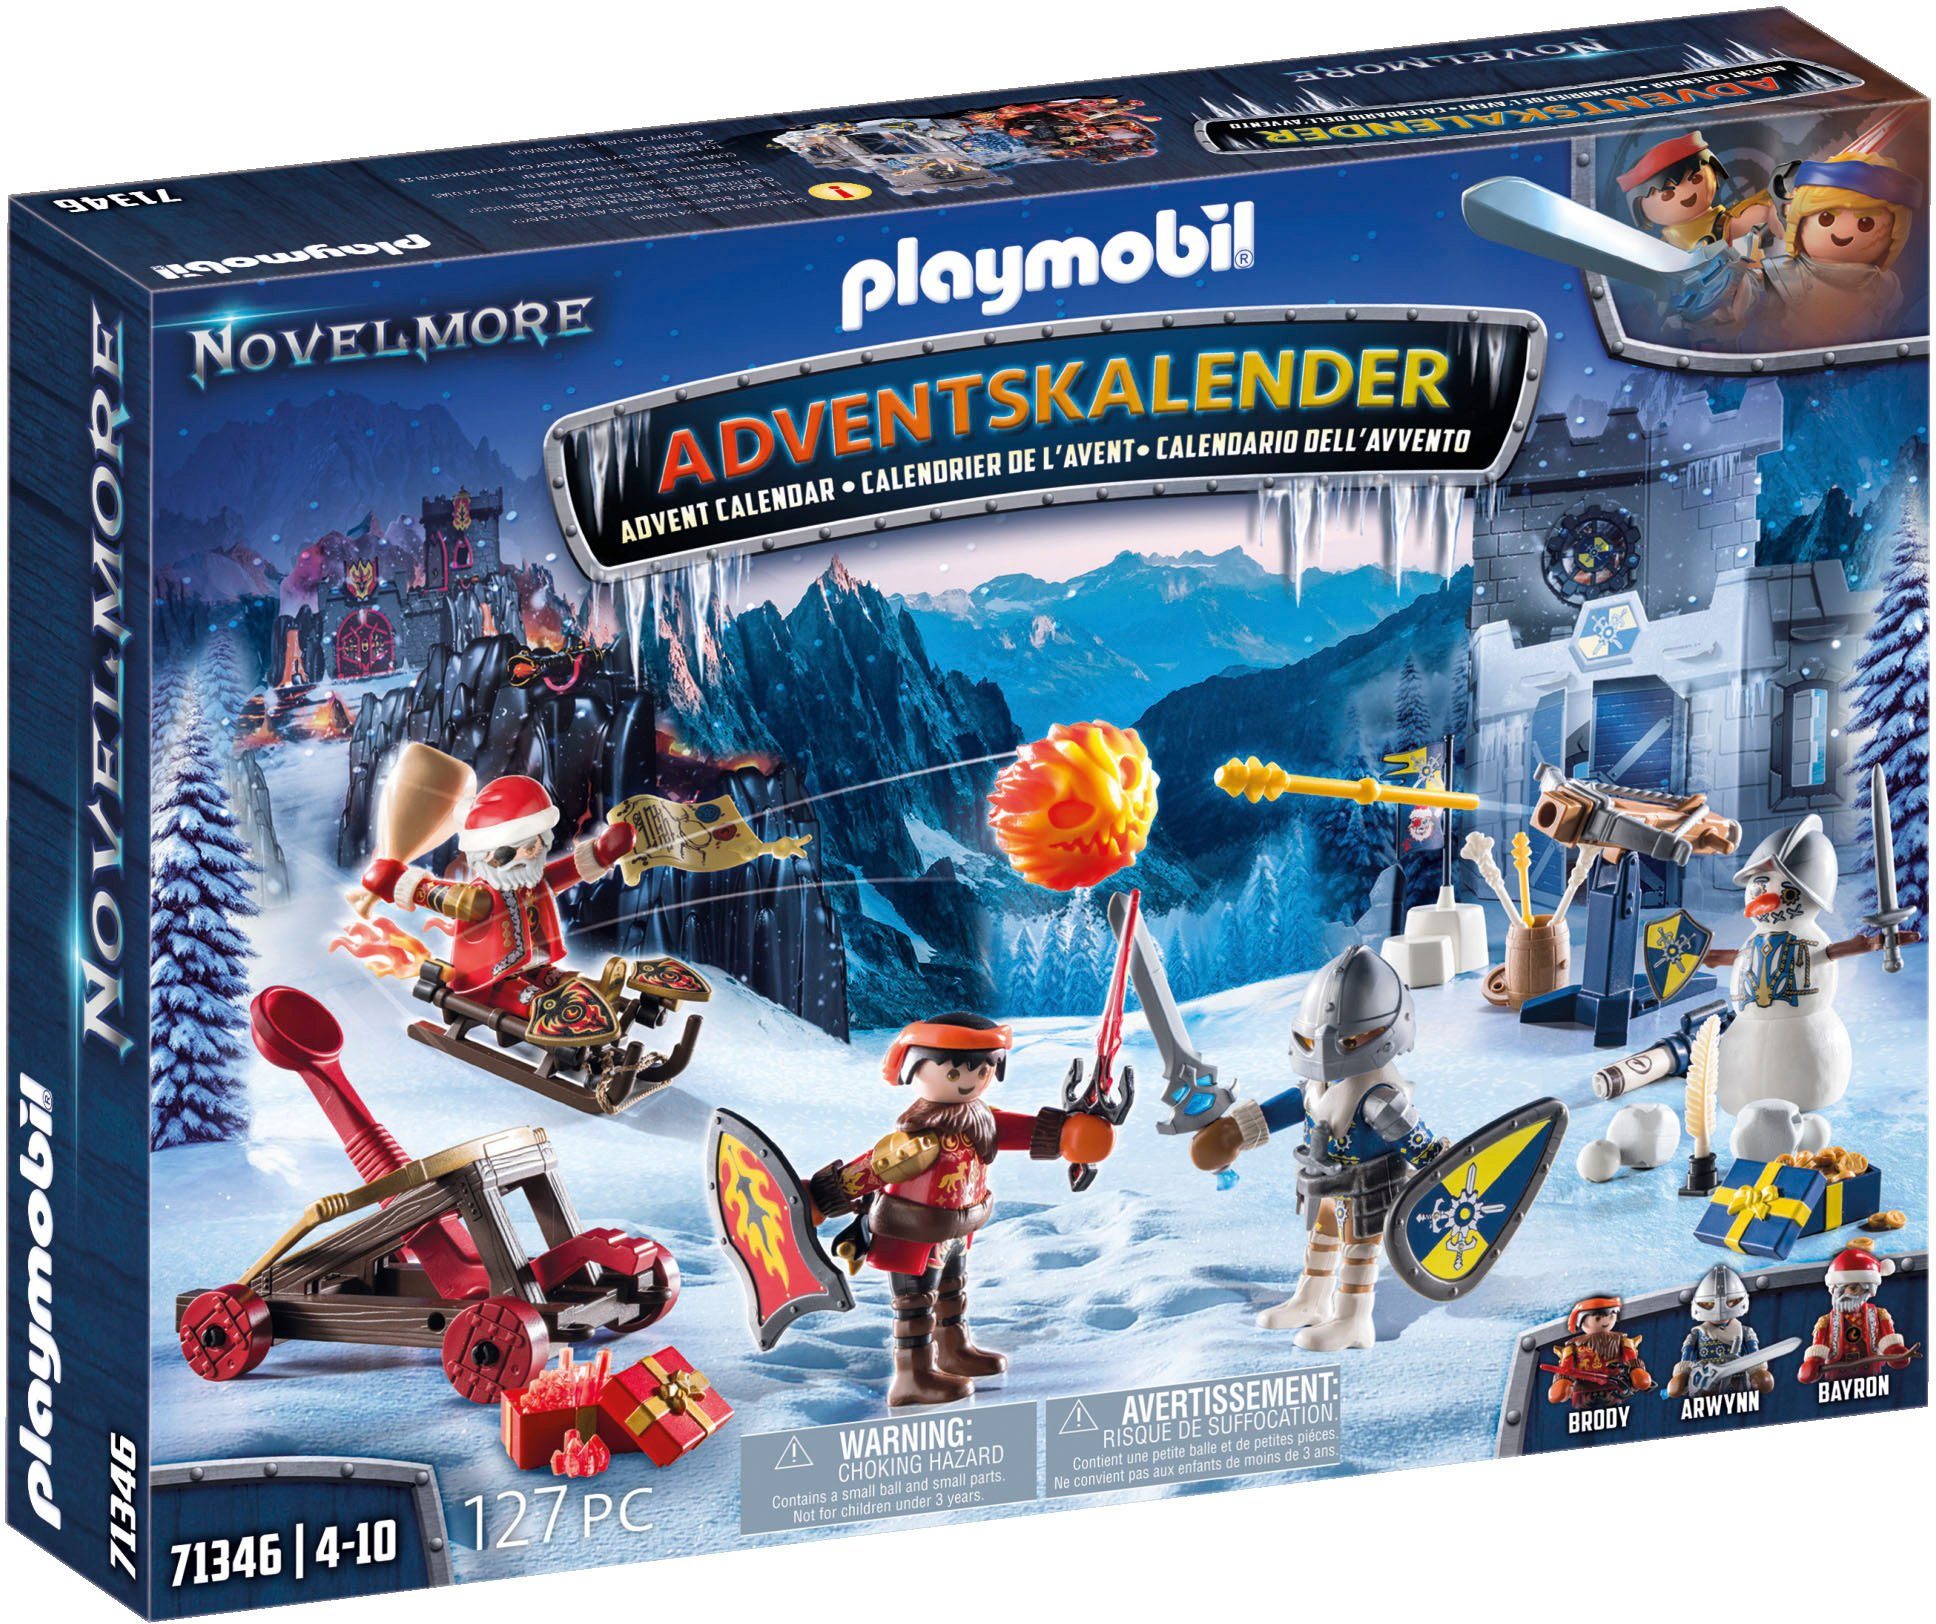 Playmobil 1.2.3 Weihnachten Bauernhof Adventskalender (71135) ab